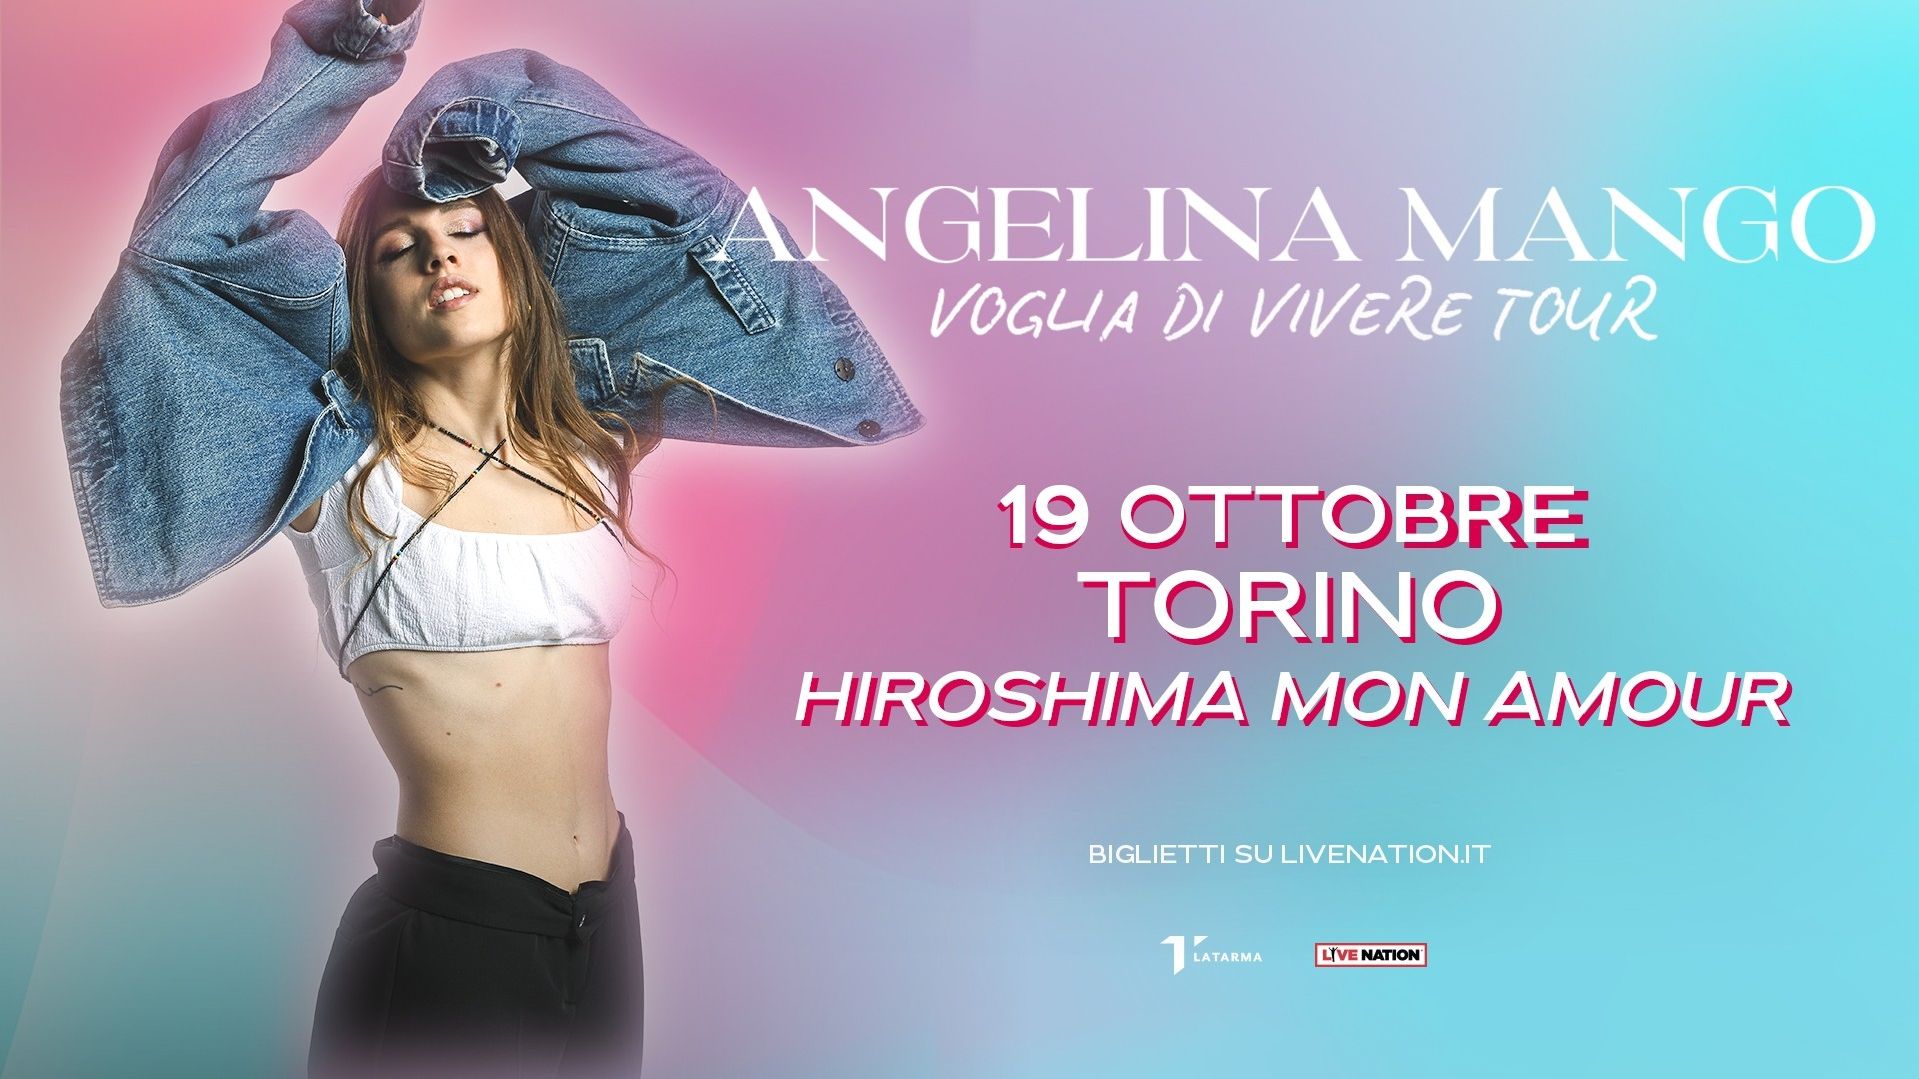 Angelina Mango "Voglia di Vivere Tour"